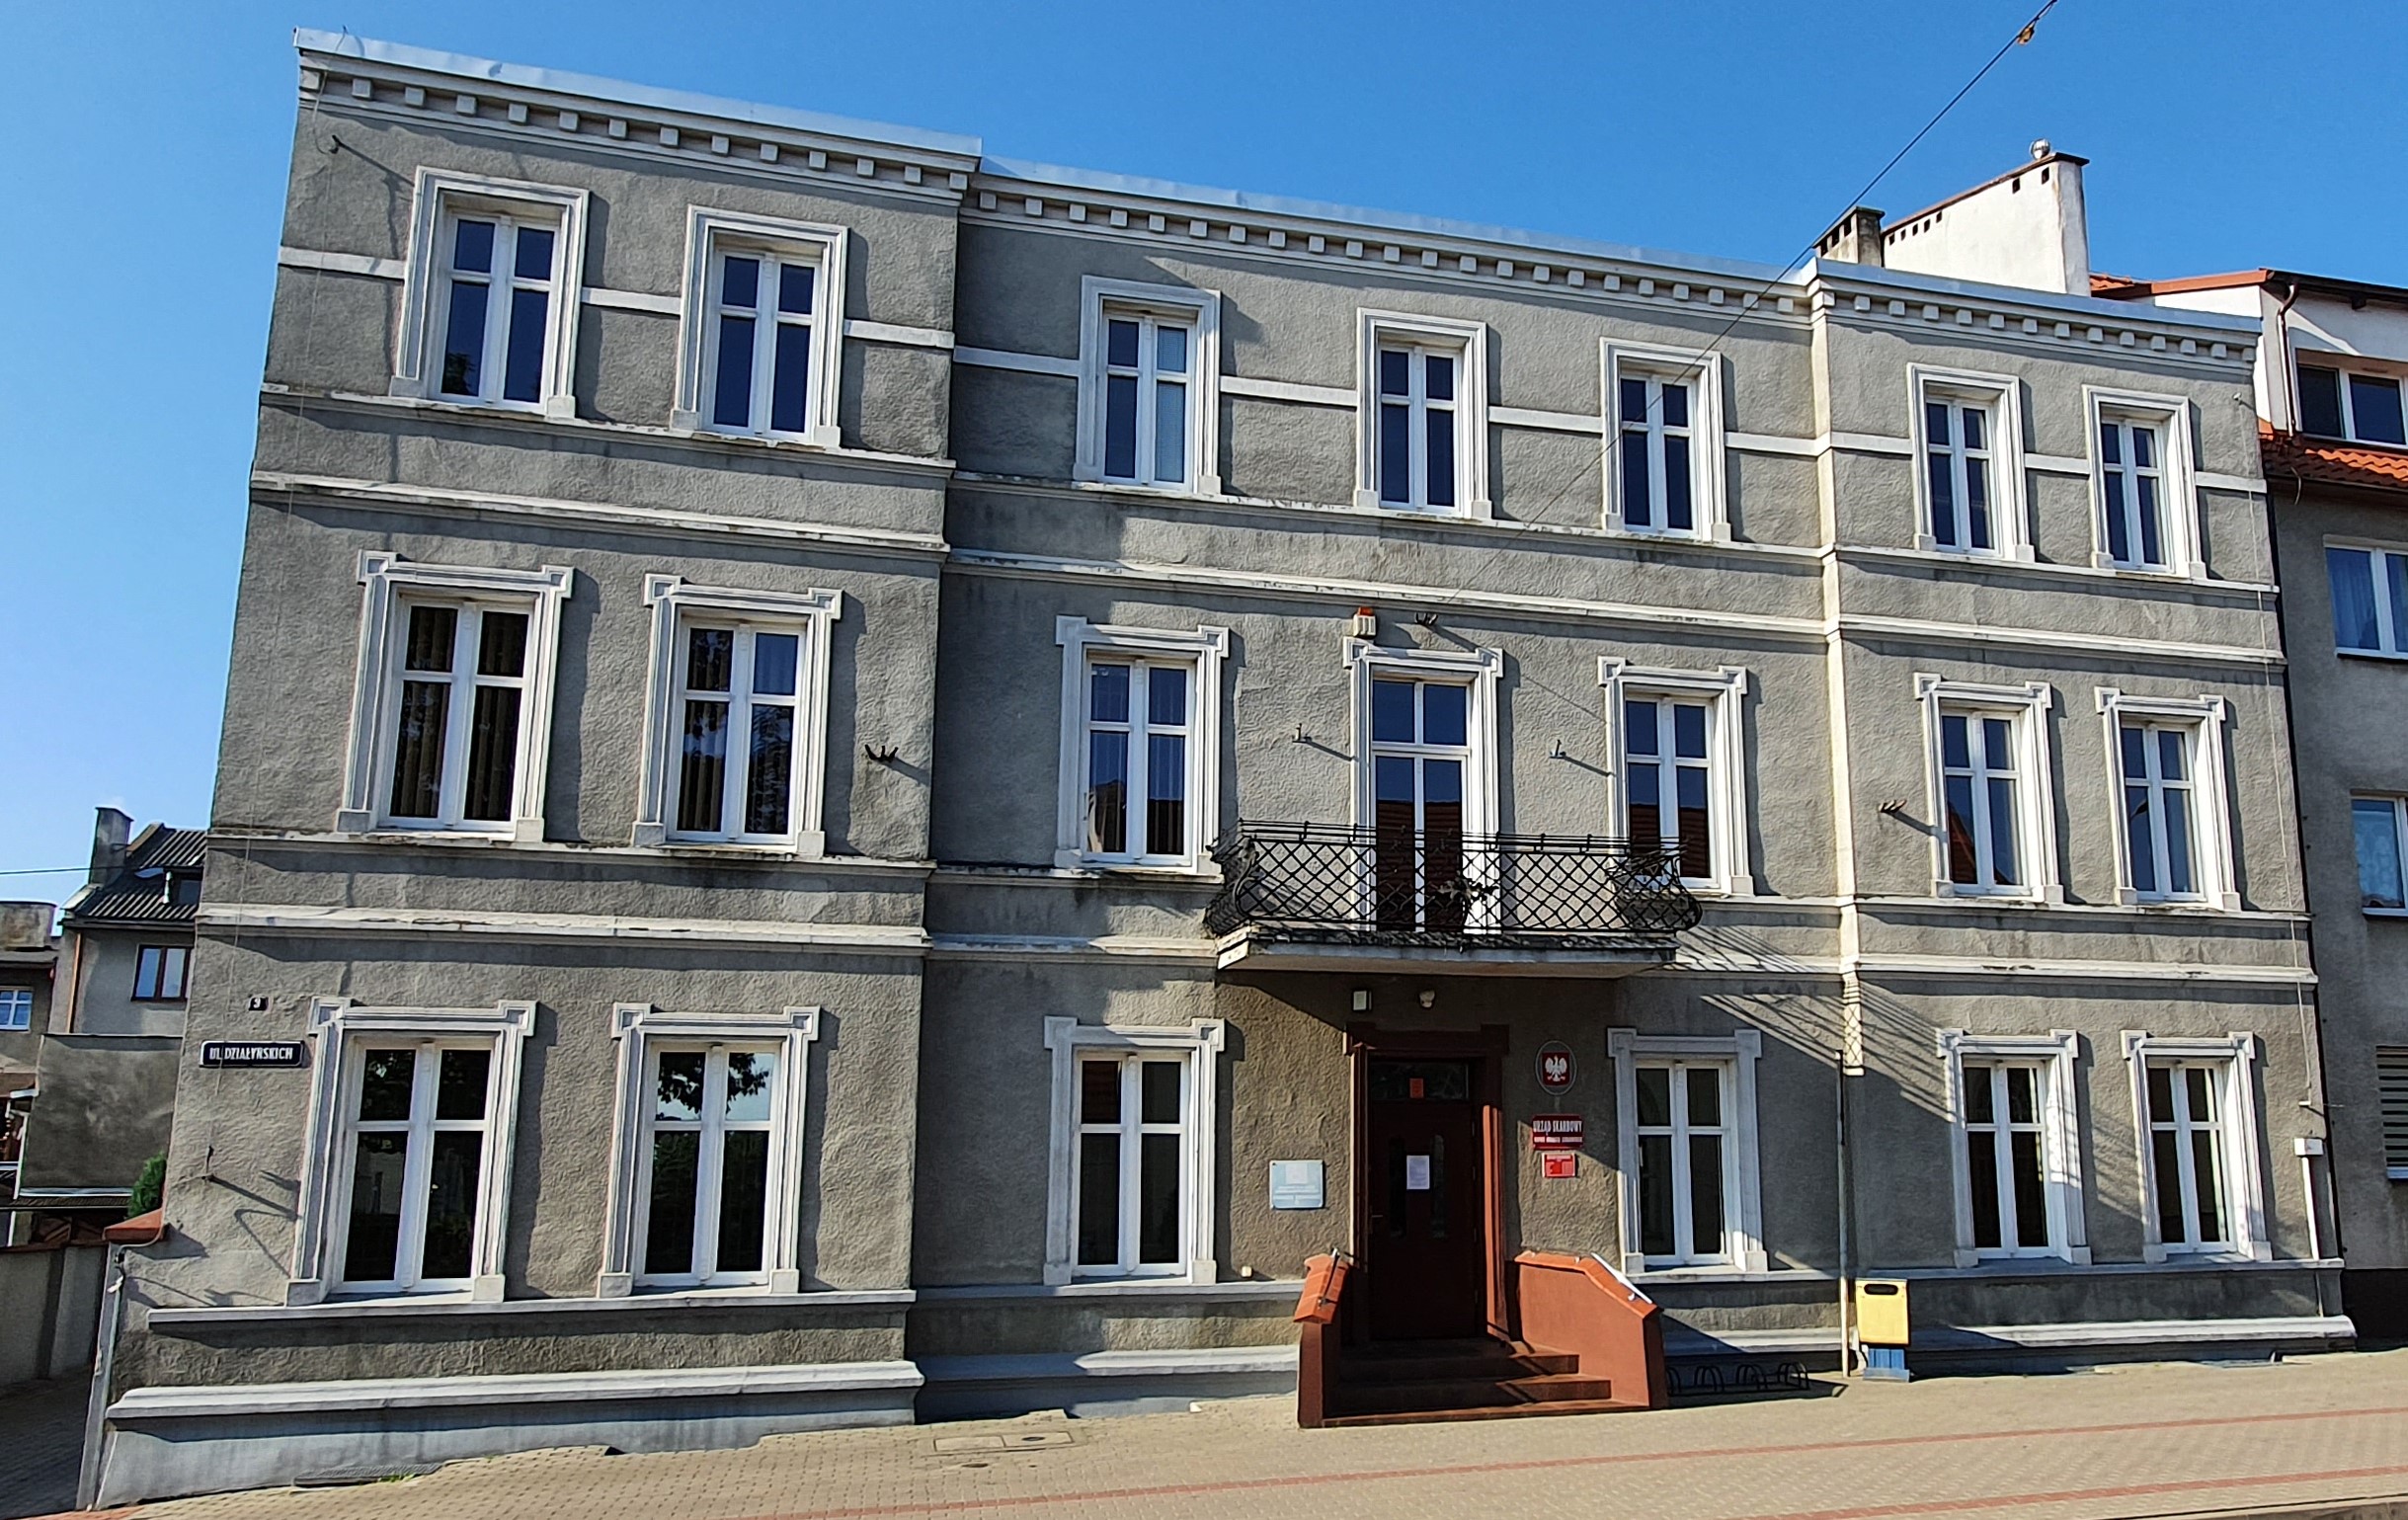 Fasada budynku, w którym znajduje się siedziba Urzędu Skarbowego w Nowym Mieście Lubawskim.